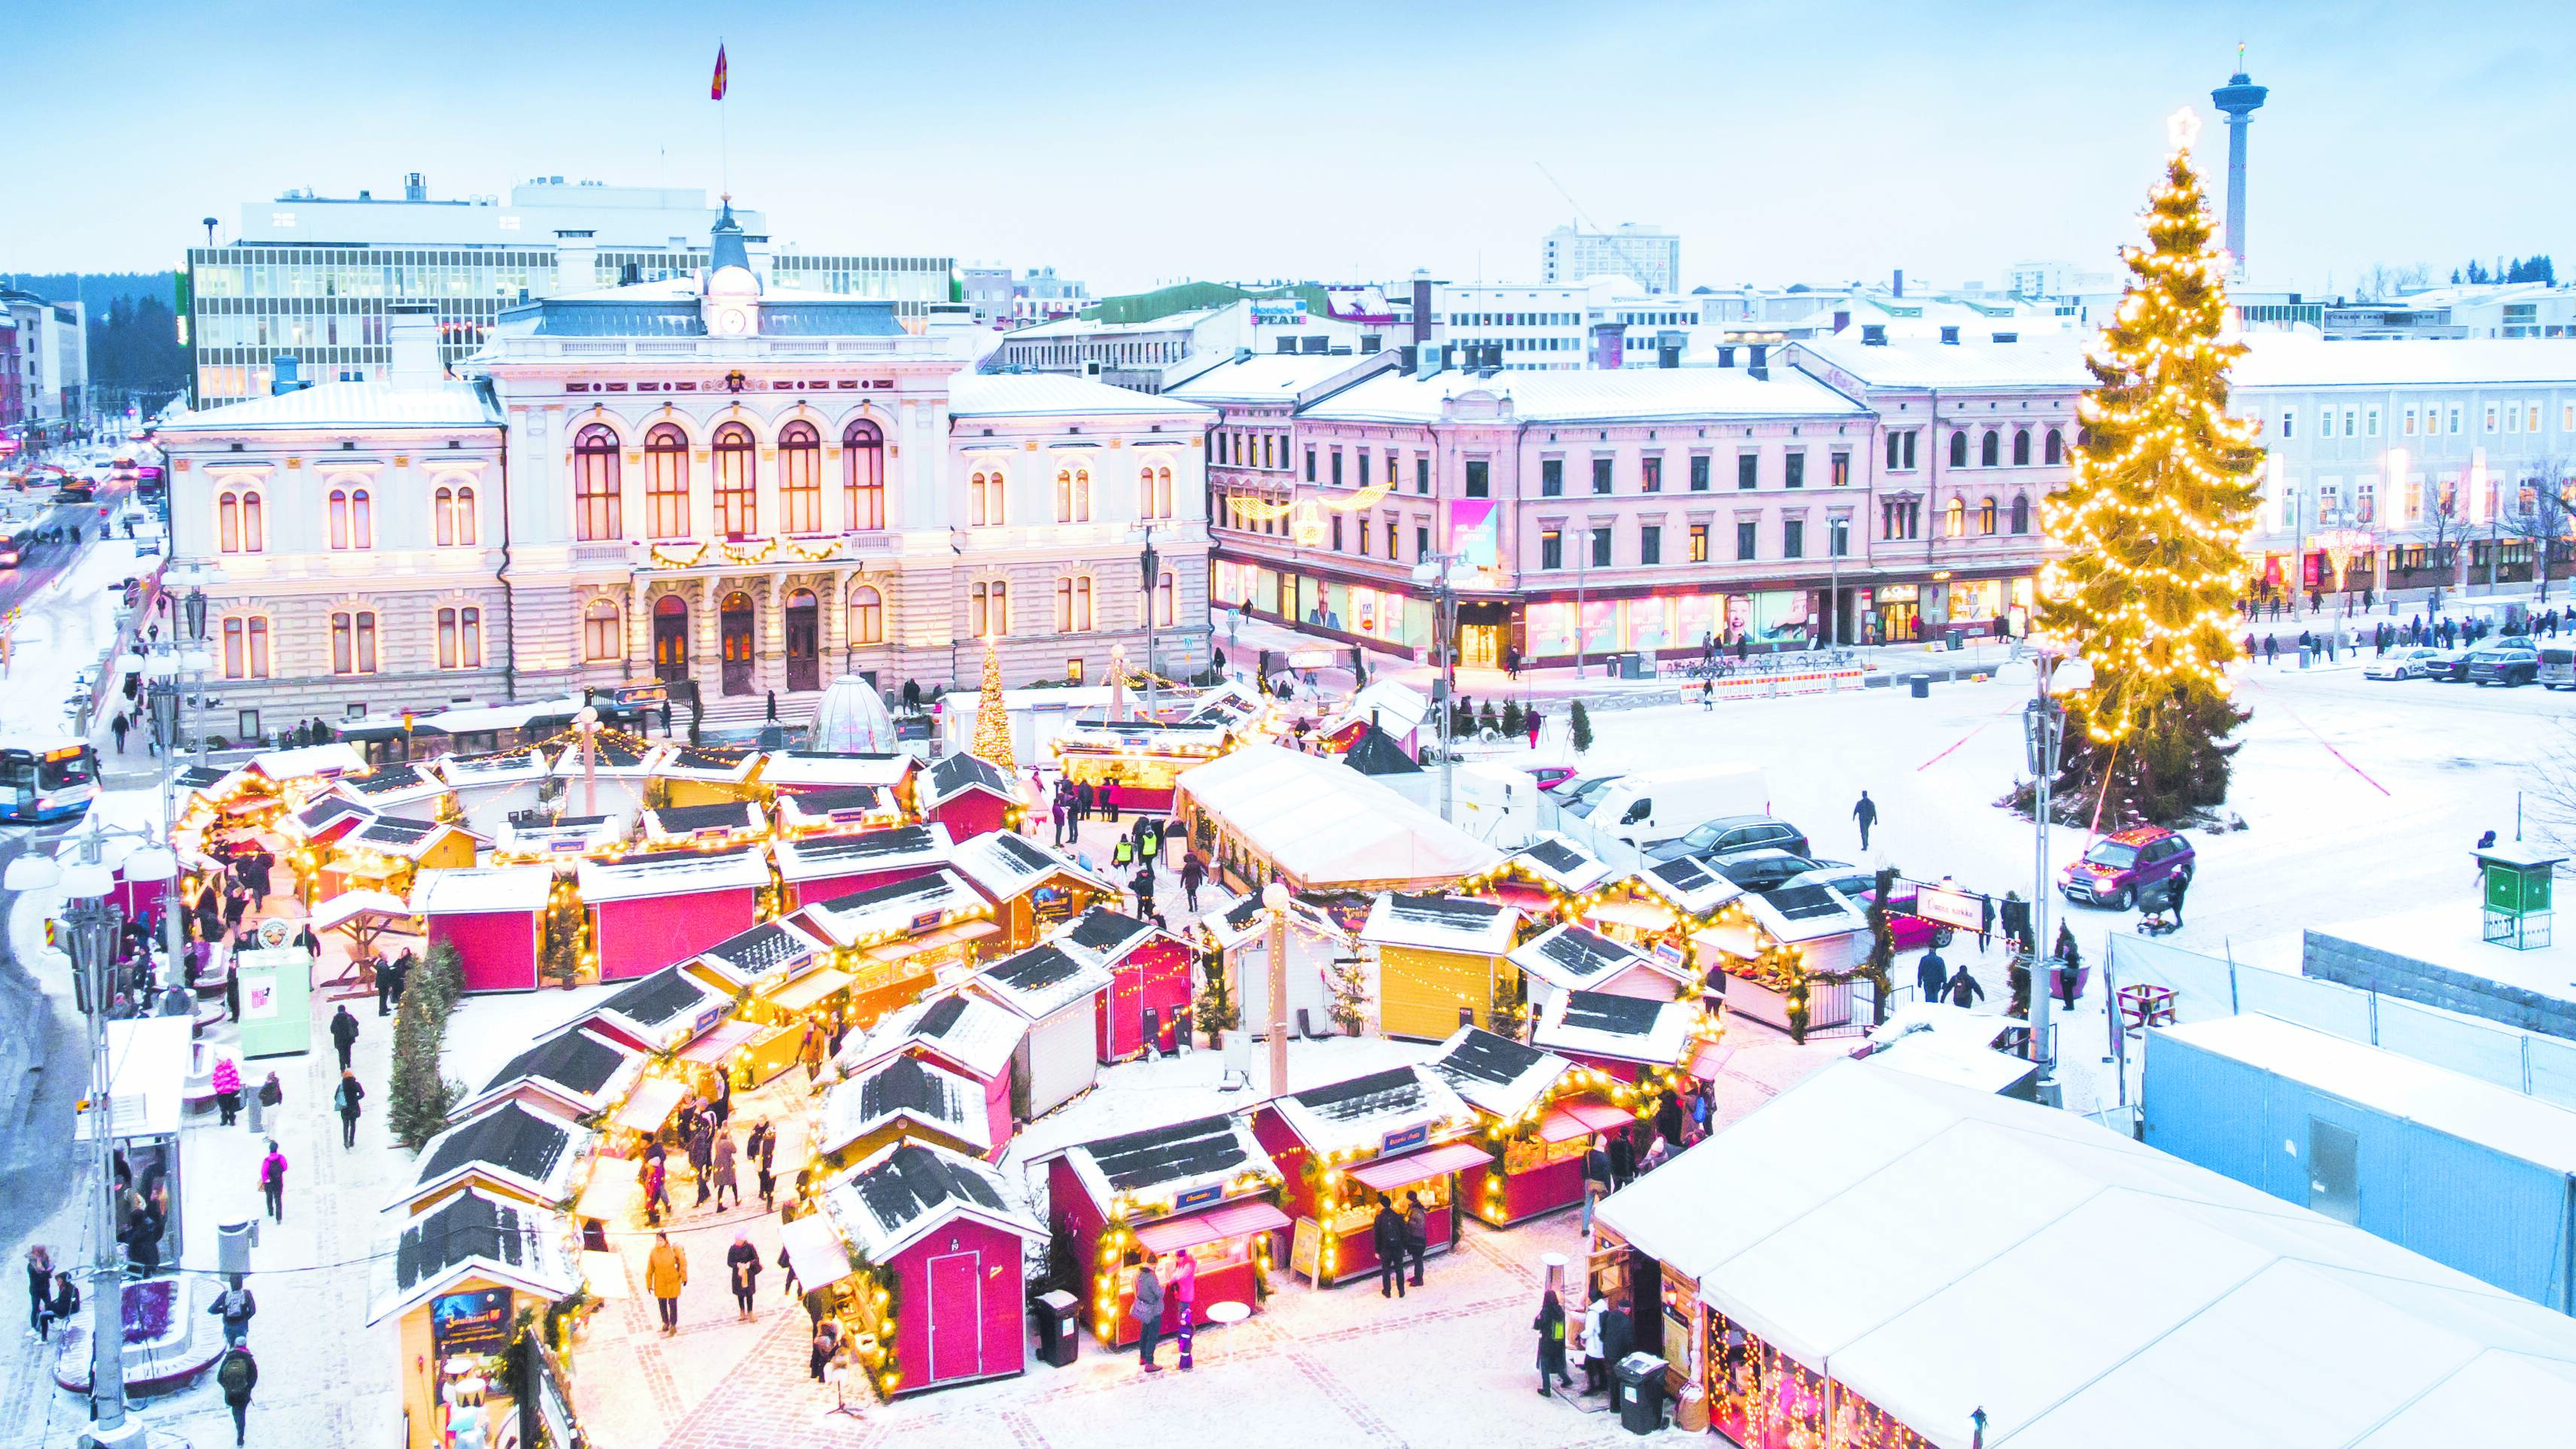 Une vue aérienne du marché de Noël de Tampere, Finlande